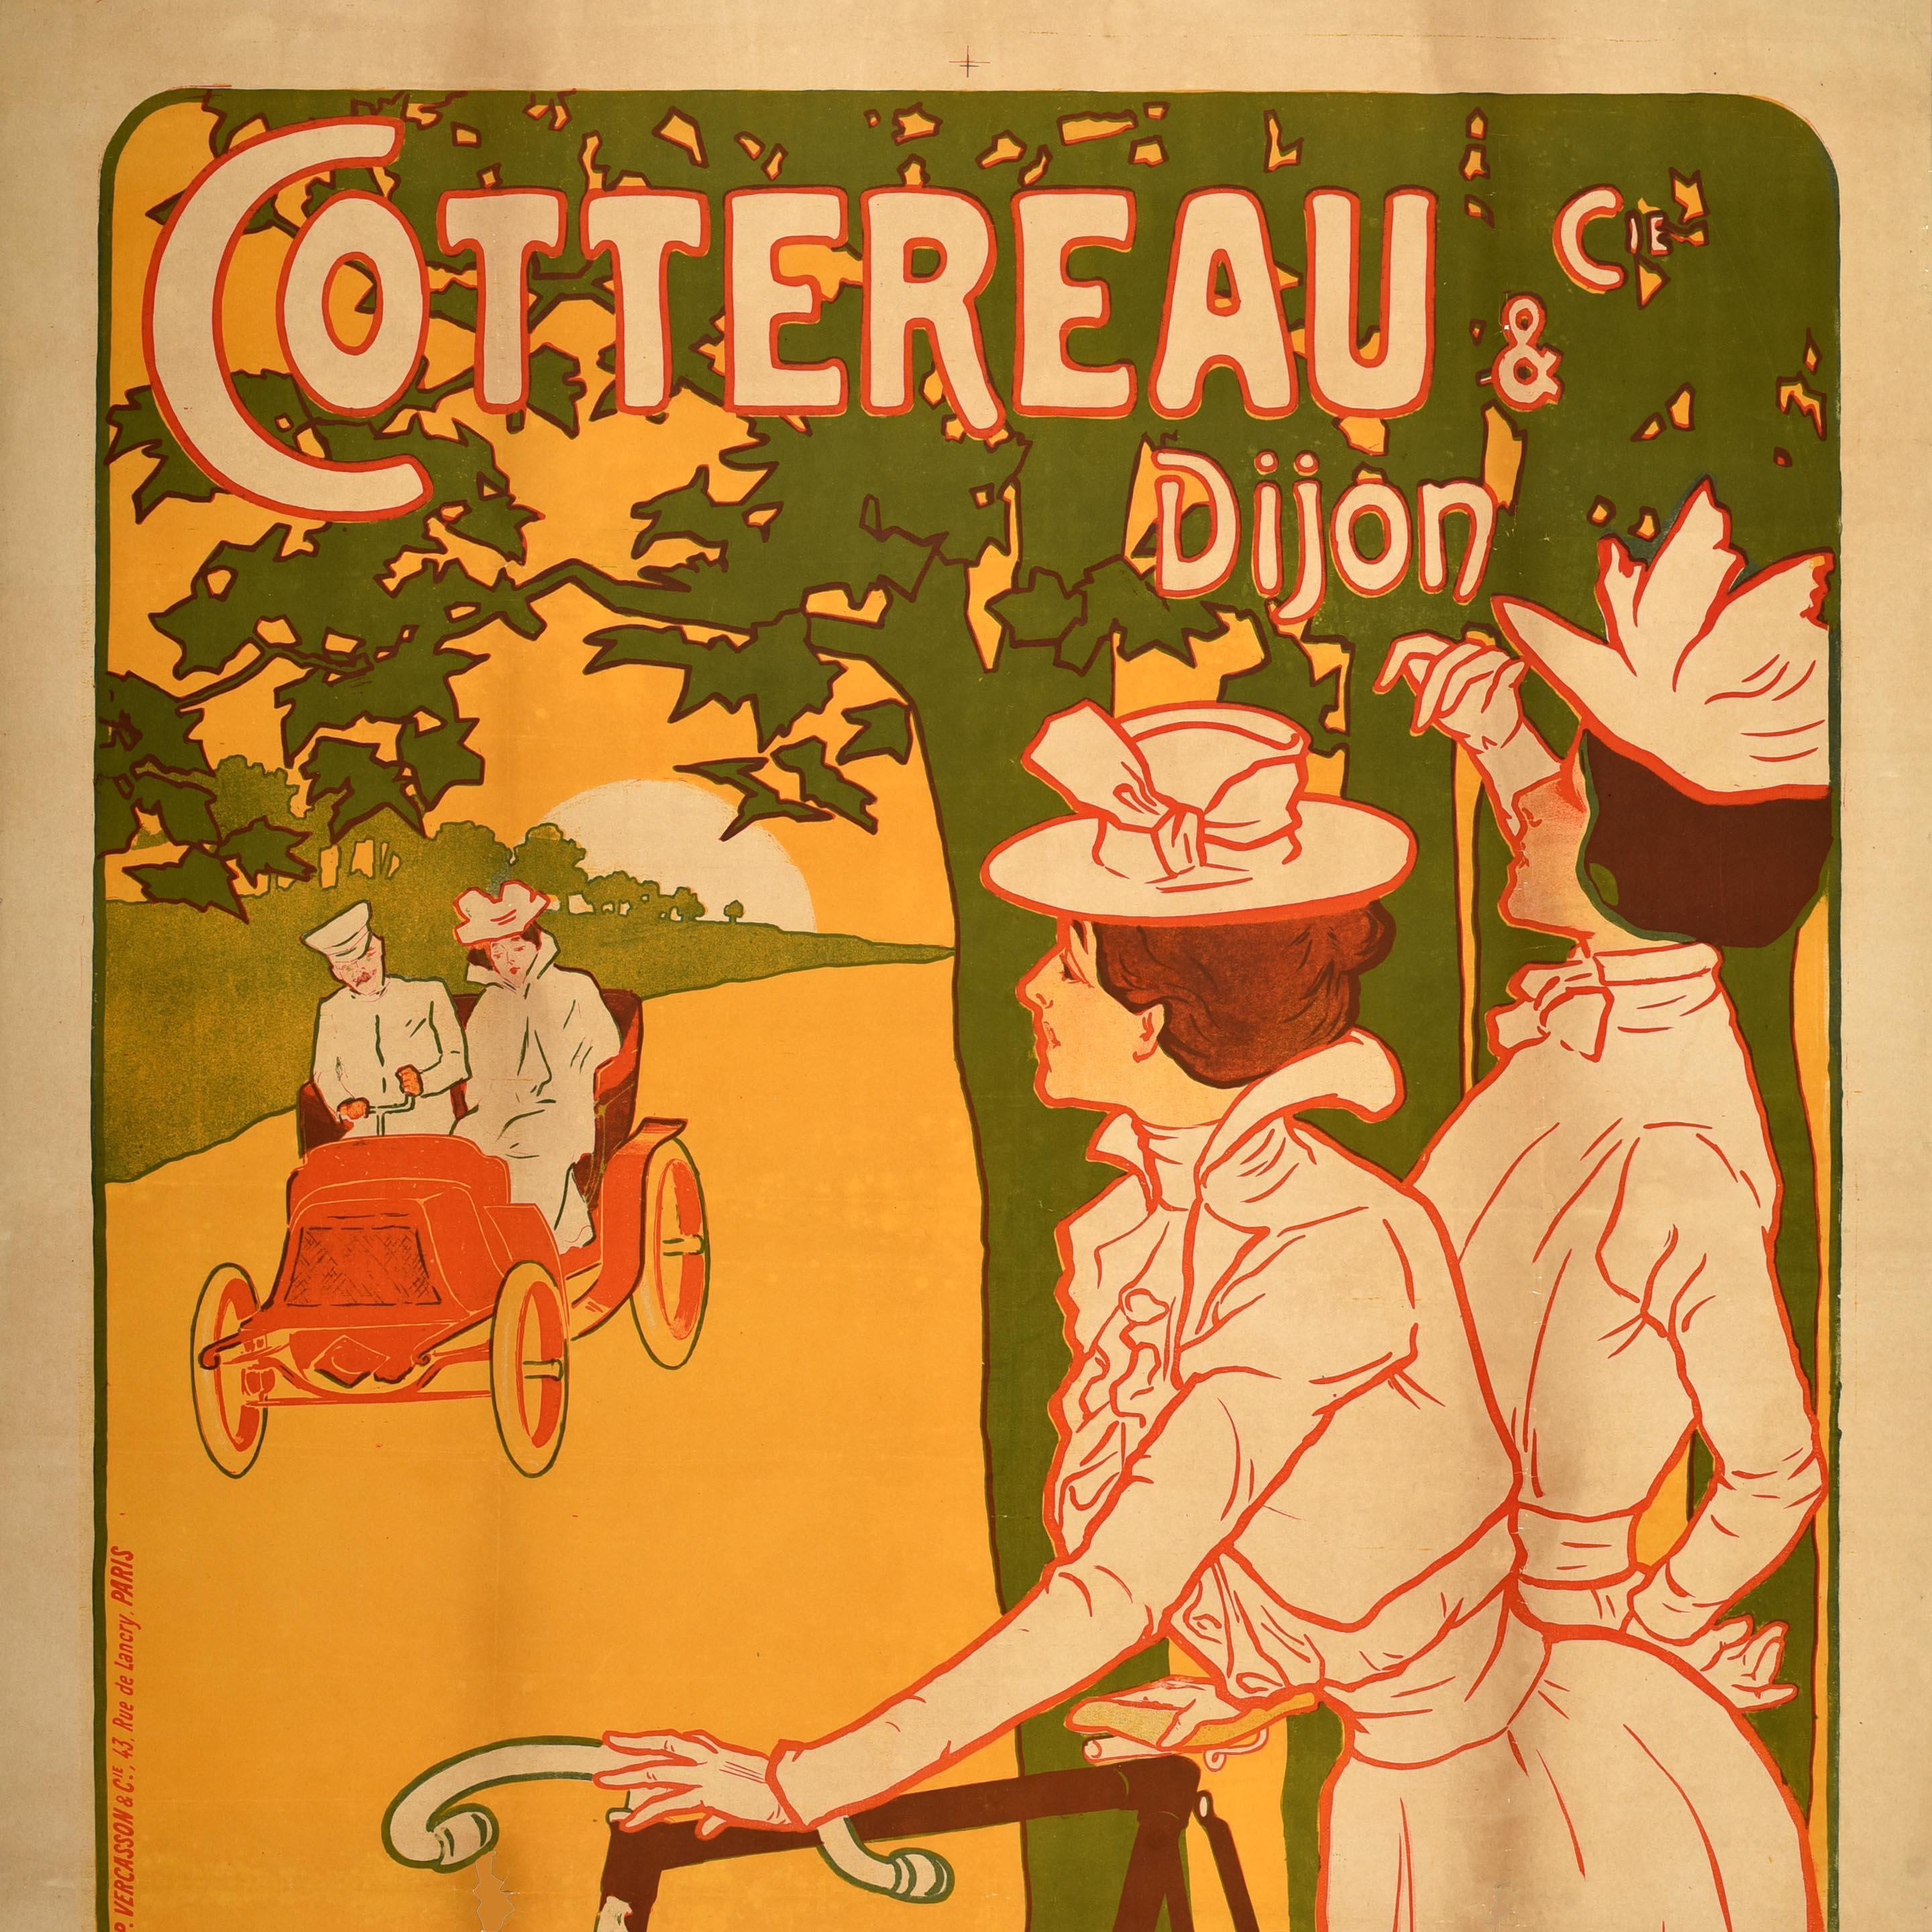 Original Antikes französisches Werbeplakat, Cottereau Misti Dijon, Belle Epoque, Belle Epoque (Braun), Print, von Ferdinand Mifliez MISTI 